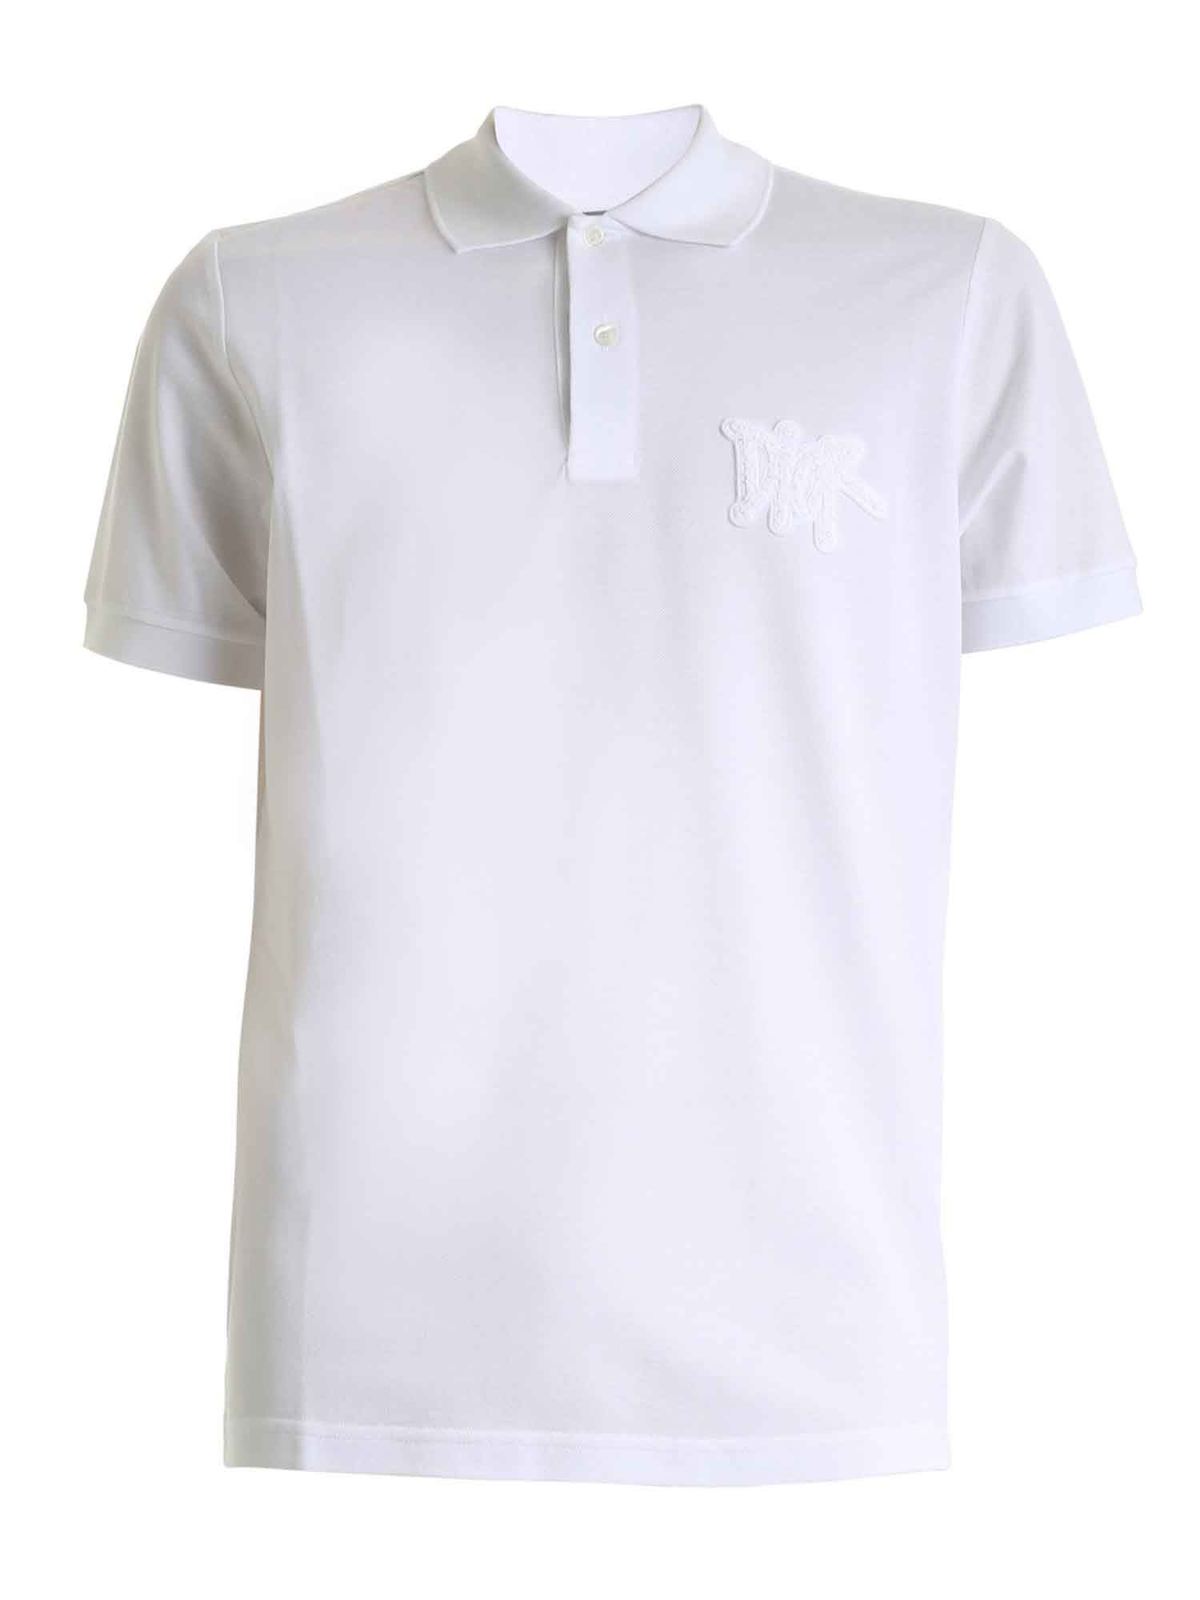 Dior - Dior and Shawn polo shirt in white - polo shirts - 033J800A0448080